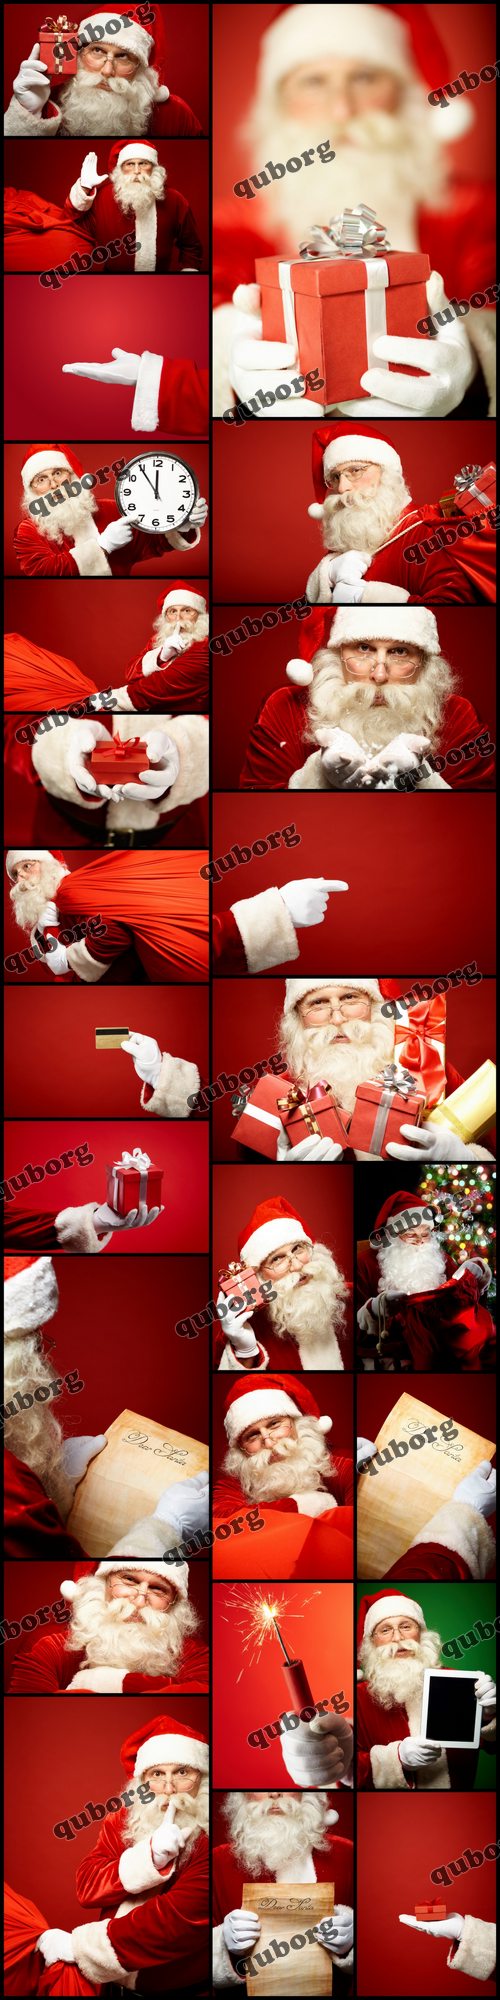 Stock Photos - Santa Claus 3